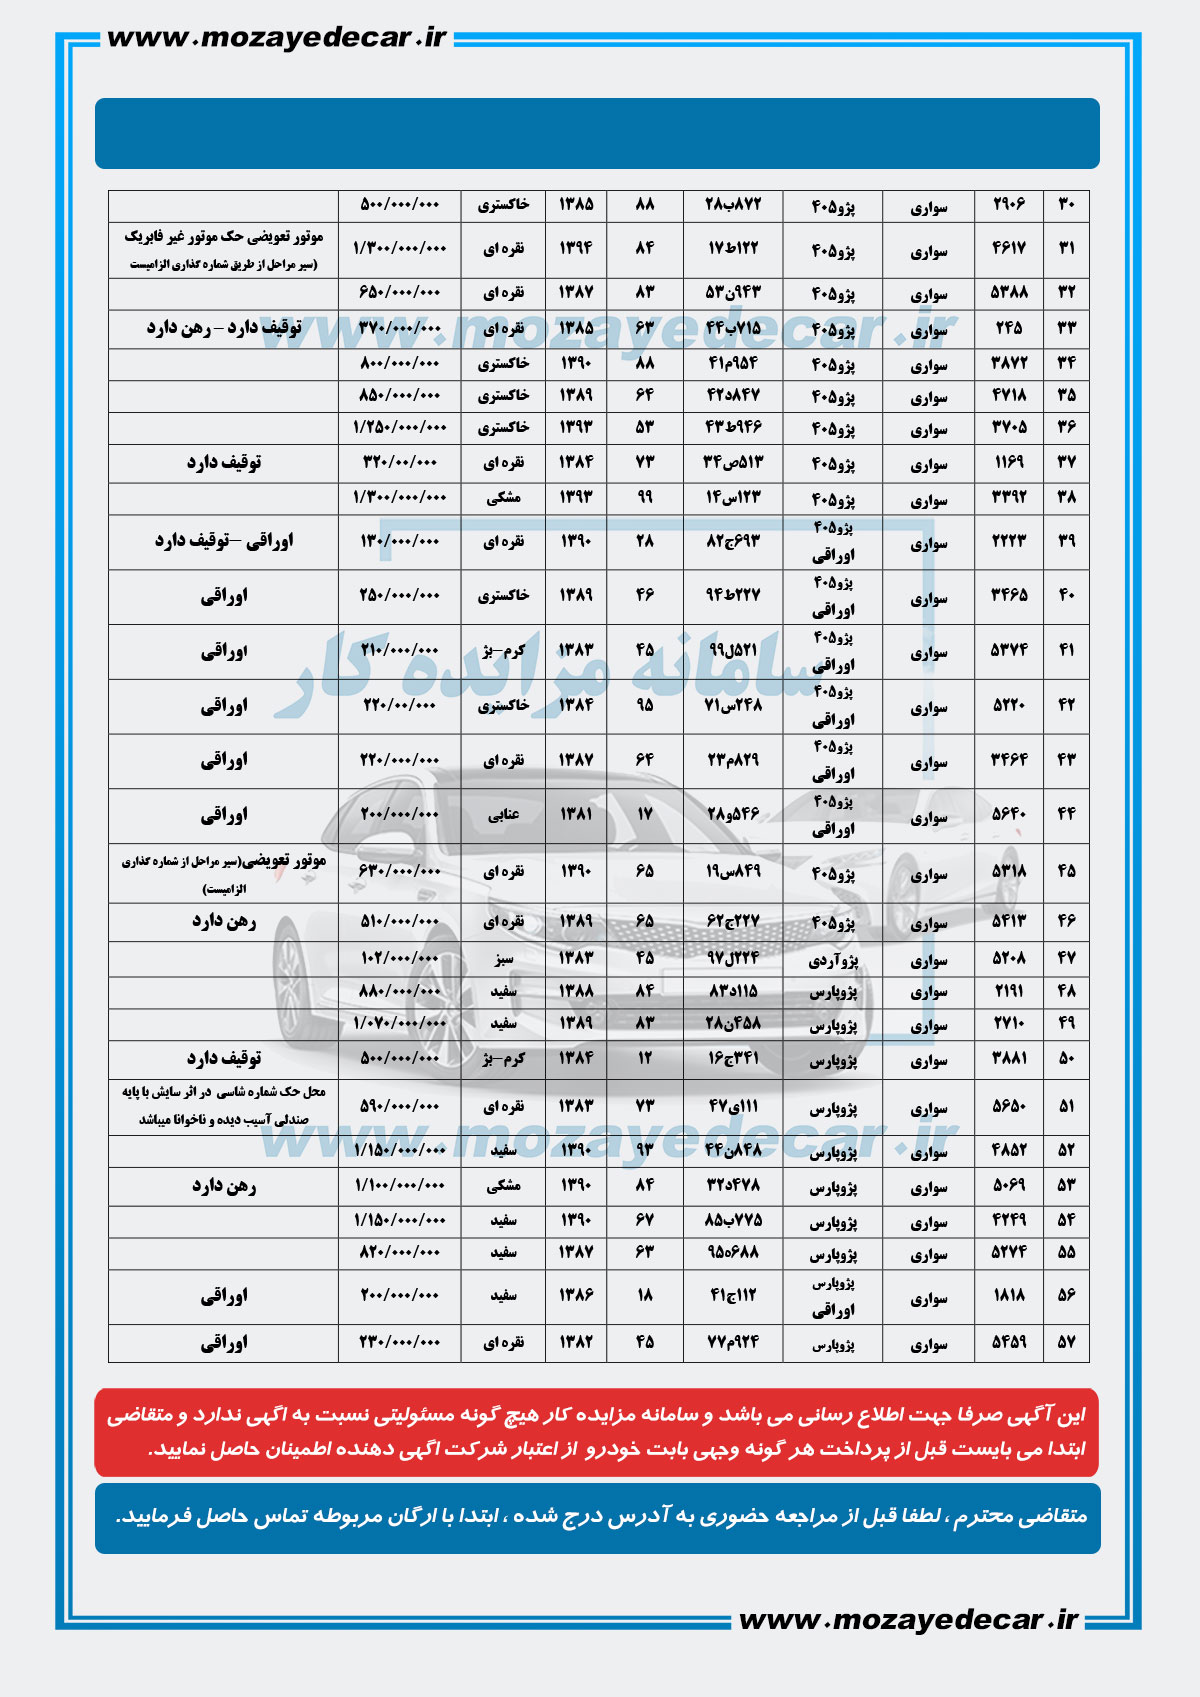 لیست قیمت مزایده اصفهان